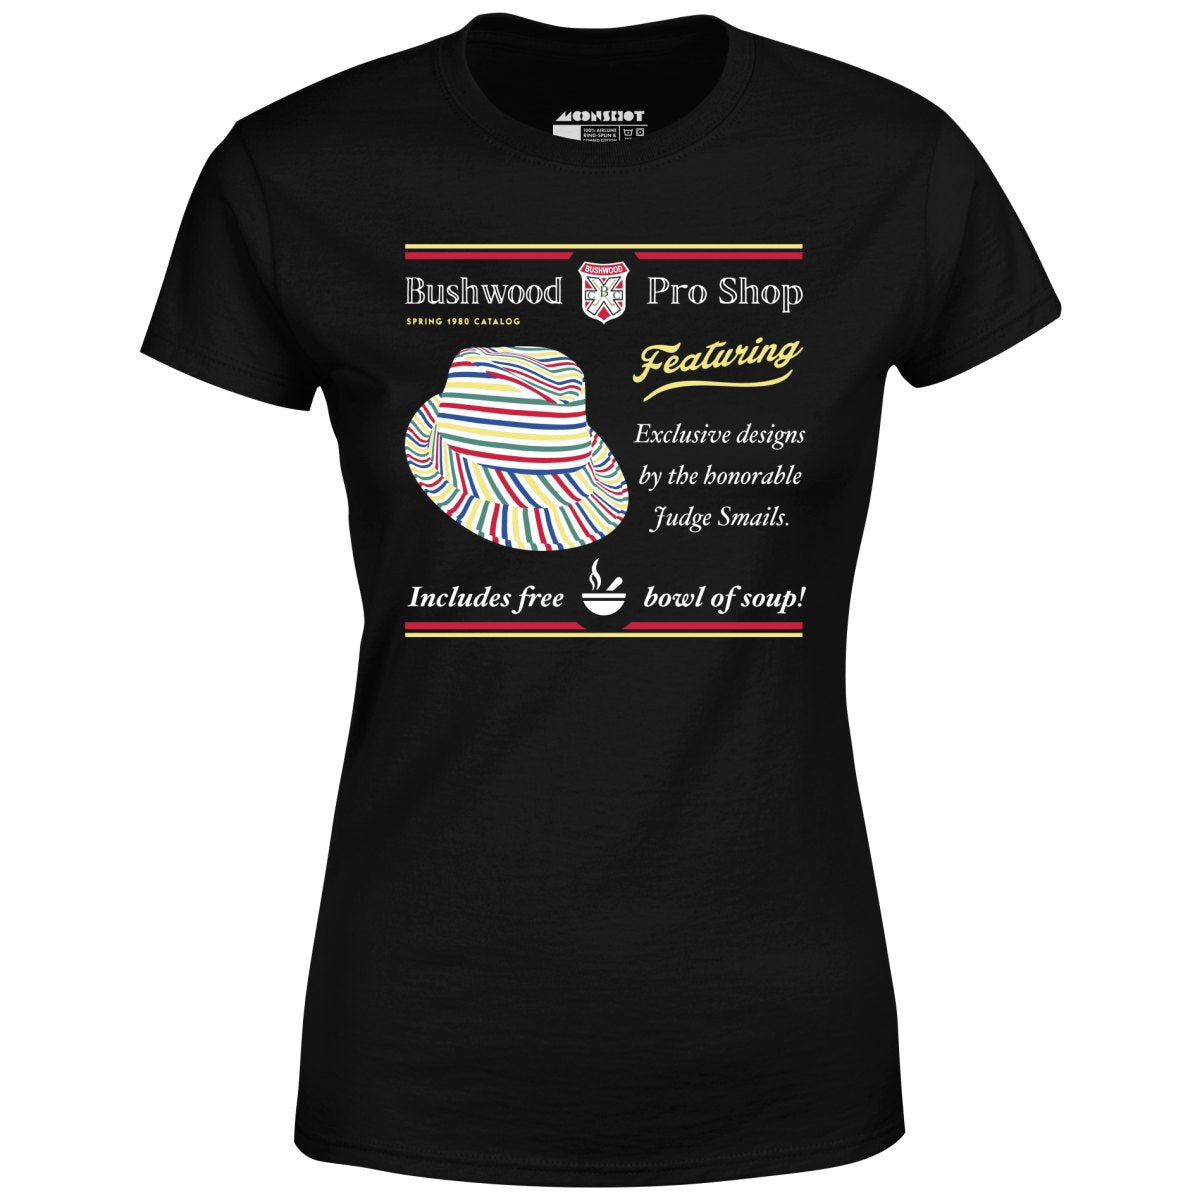 Bushwood Pro Shop - Women's T-Shirt